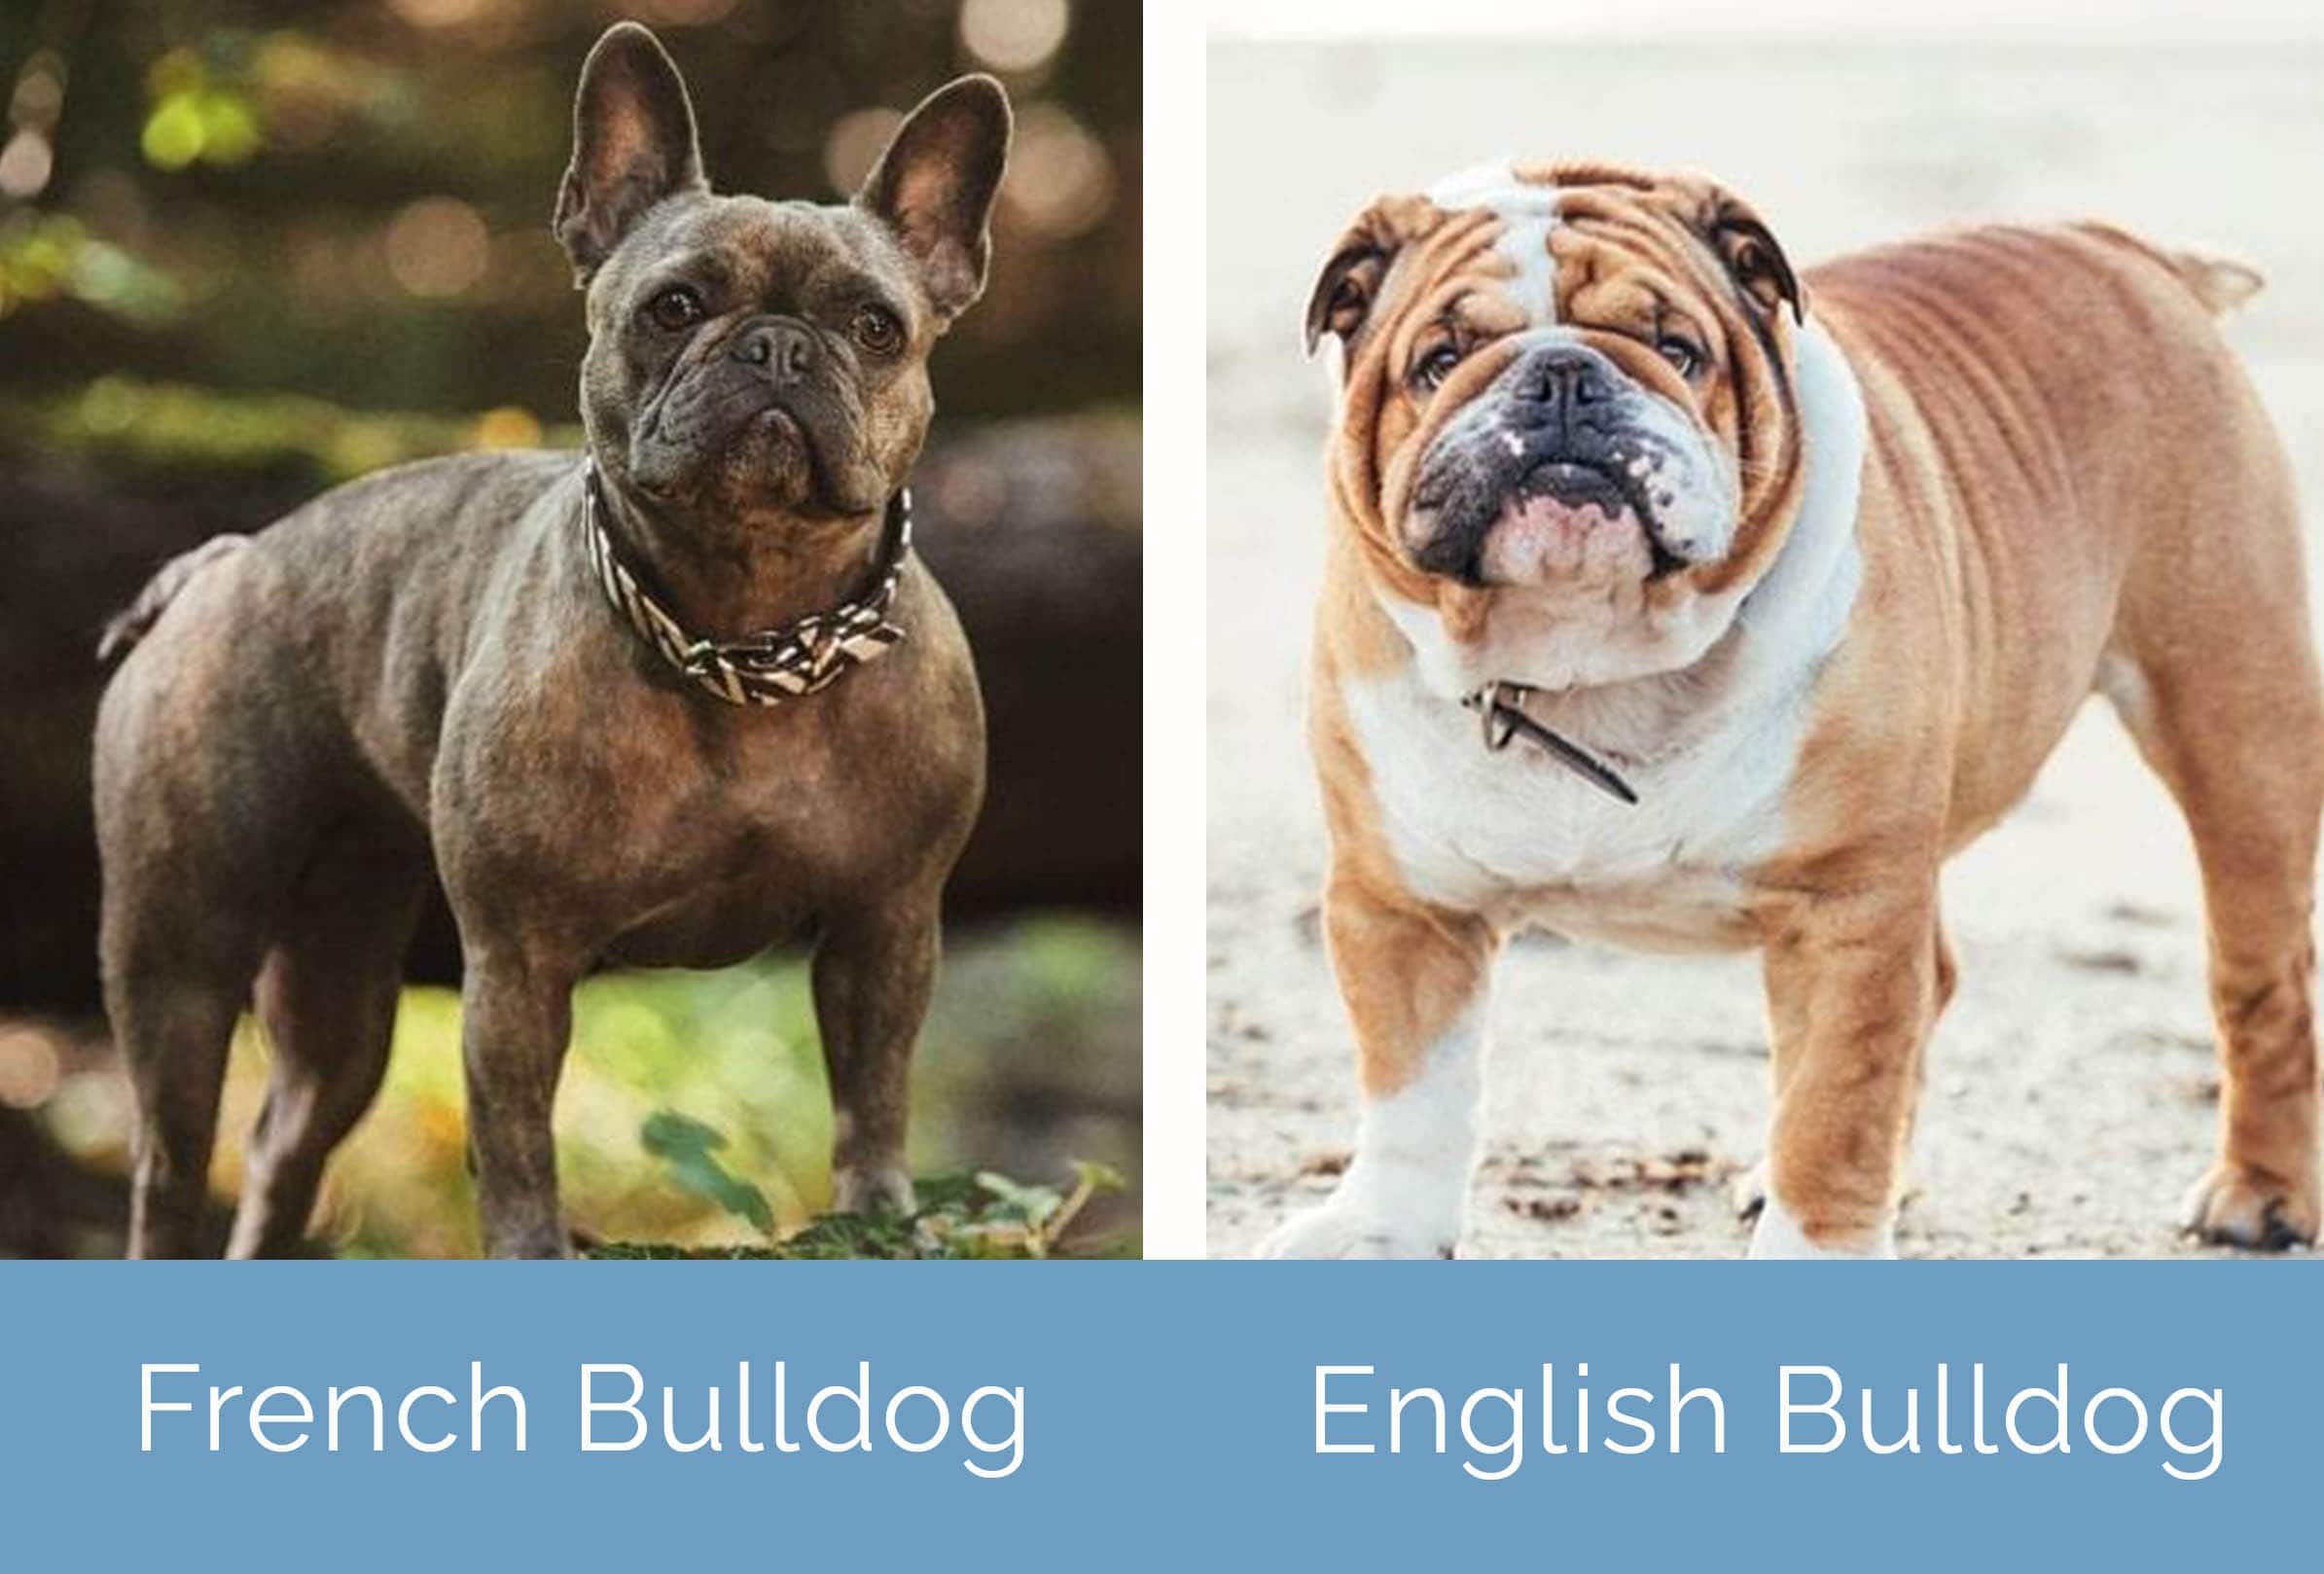 Can English Bulldogs Birth Naturally